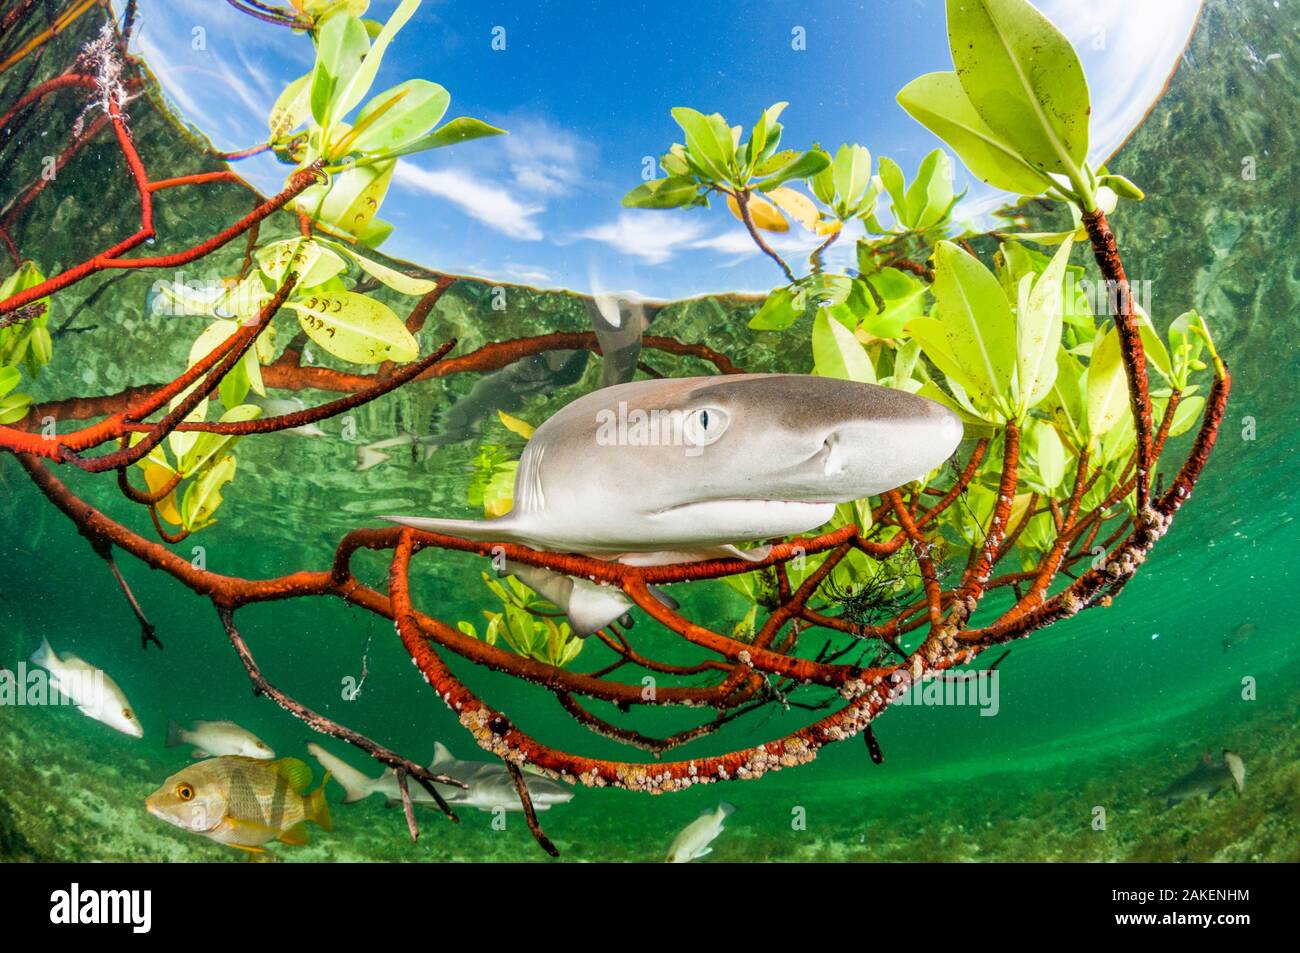 Lemon shark Pup (Negaprion brevirostris) in den Mangrovenwald, die als Kinderstube für Jungfische dieser Art handelt. Eleuthera, Bahamas. Stockfoto